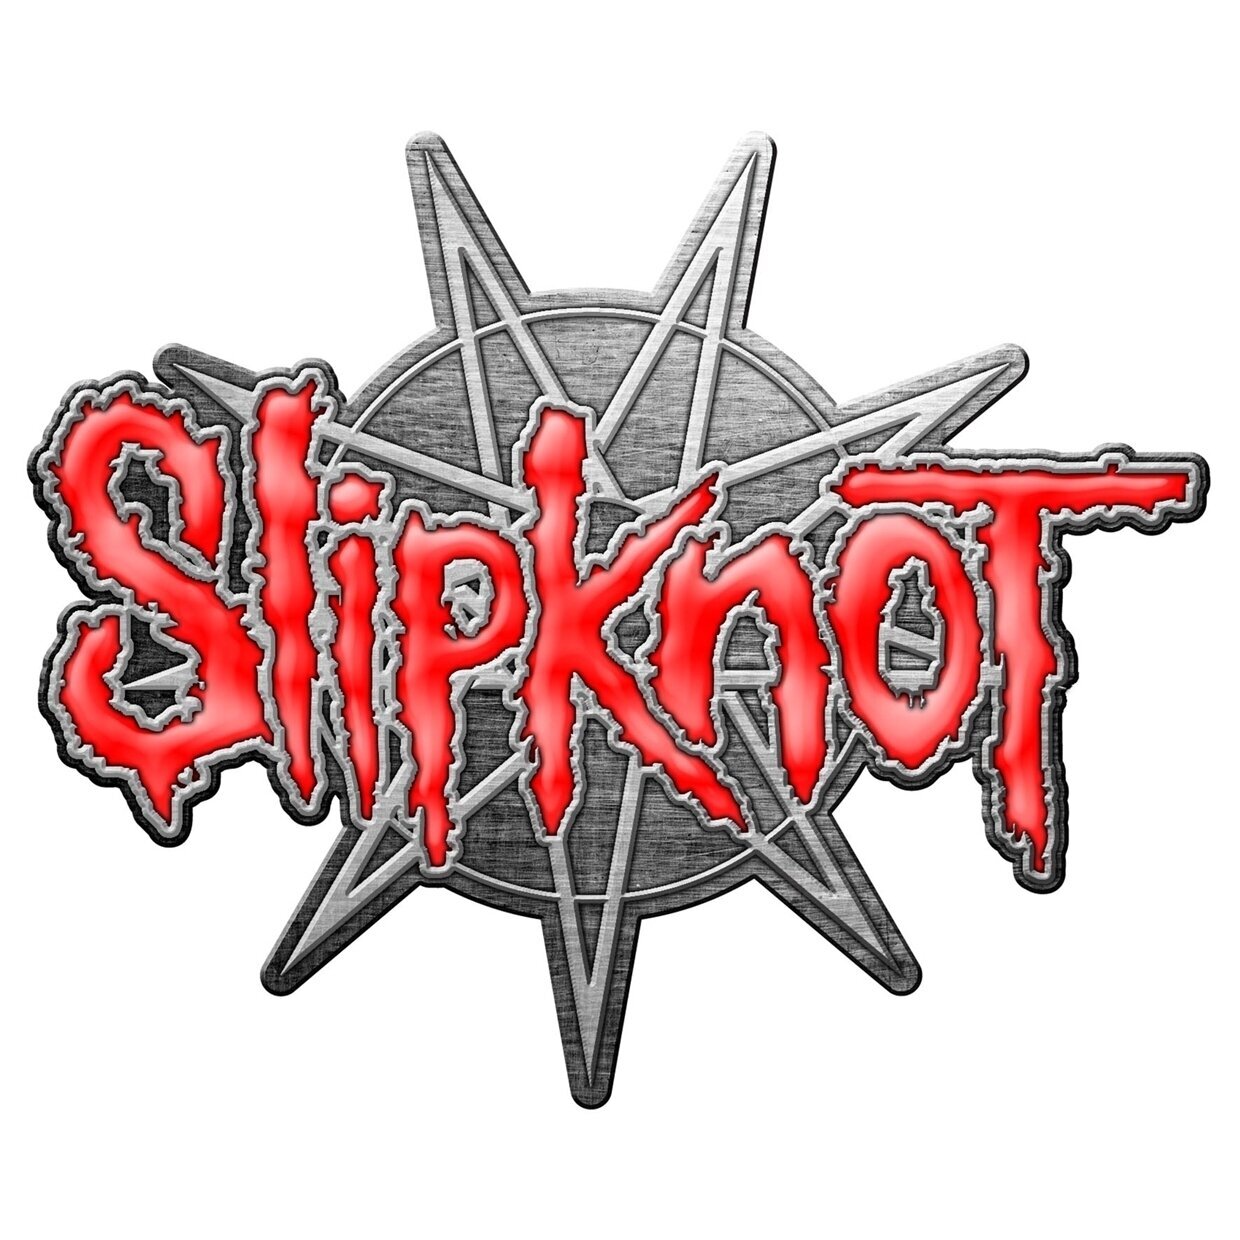 Abzeichen Slipknot 9 Pointed Star Badge Metallic Abzeichen